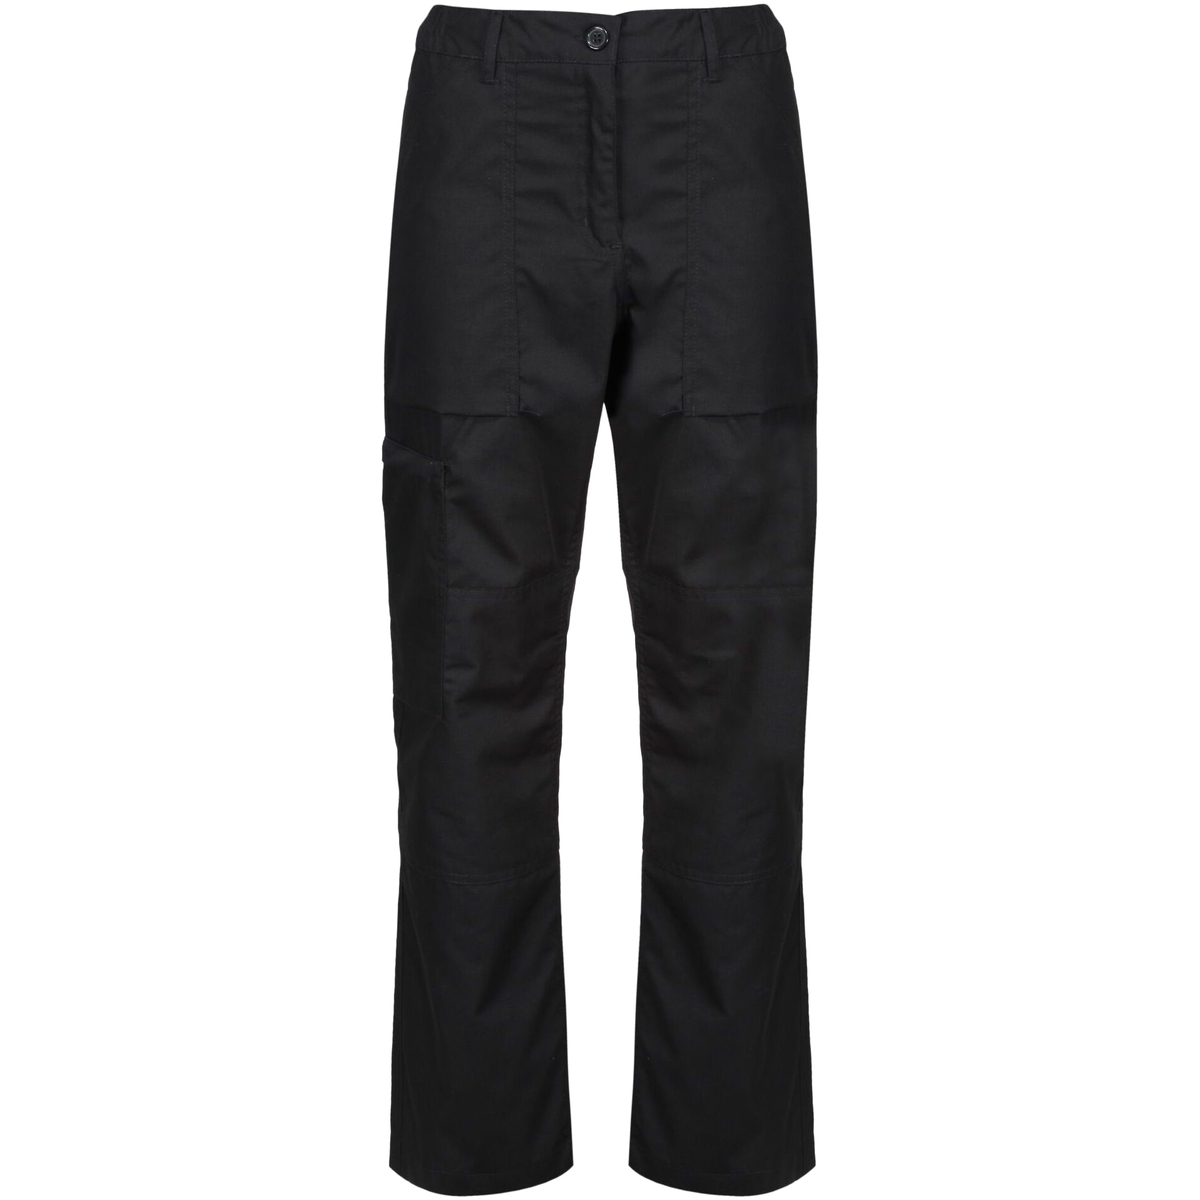 Vêtements Femme Pantalons de survêtement Regatta TRJ334L Noir